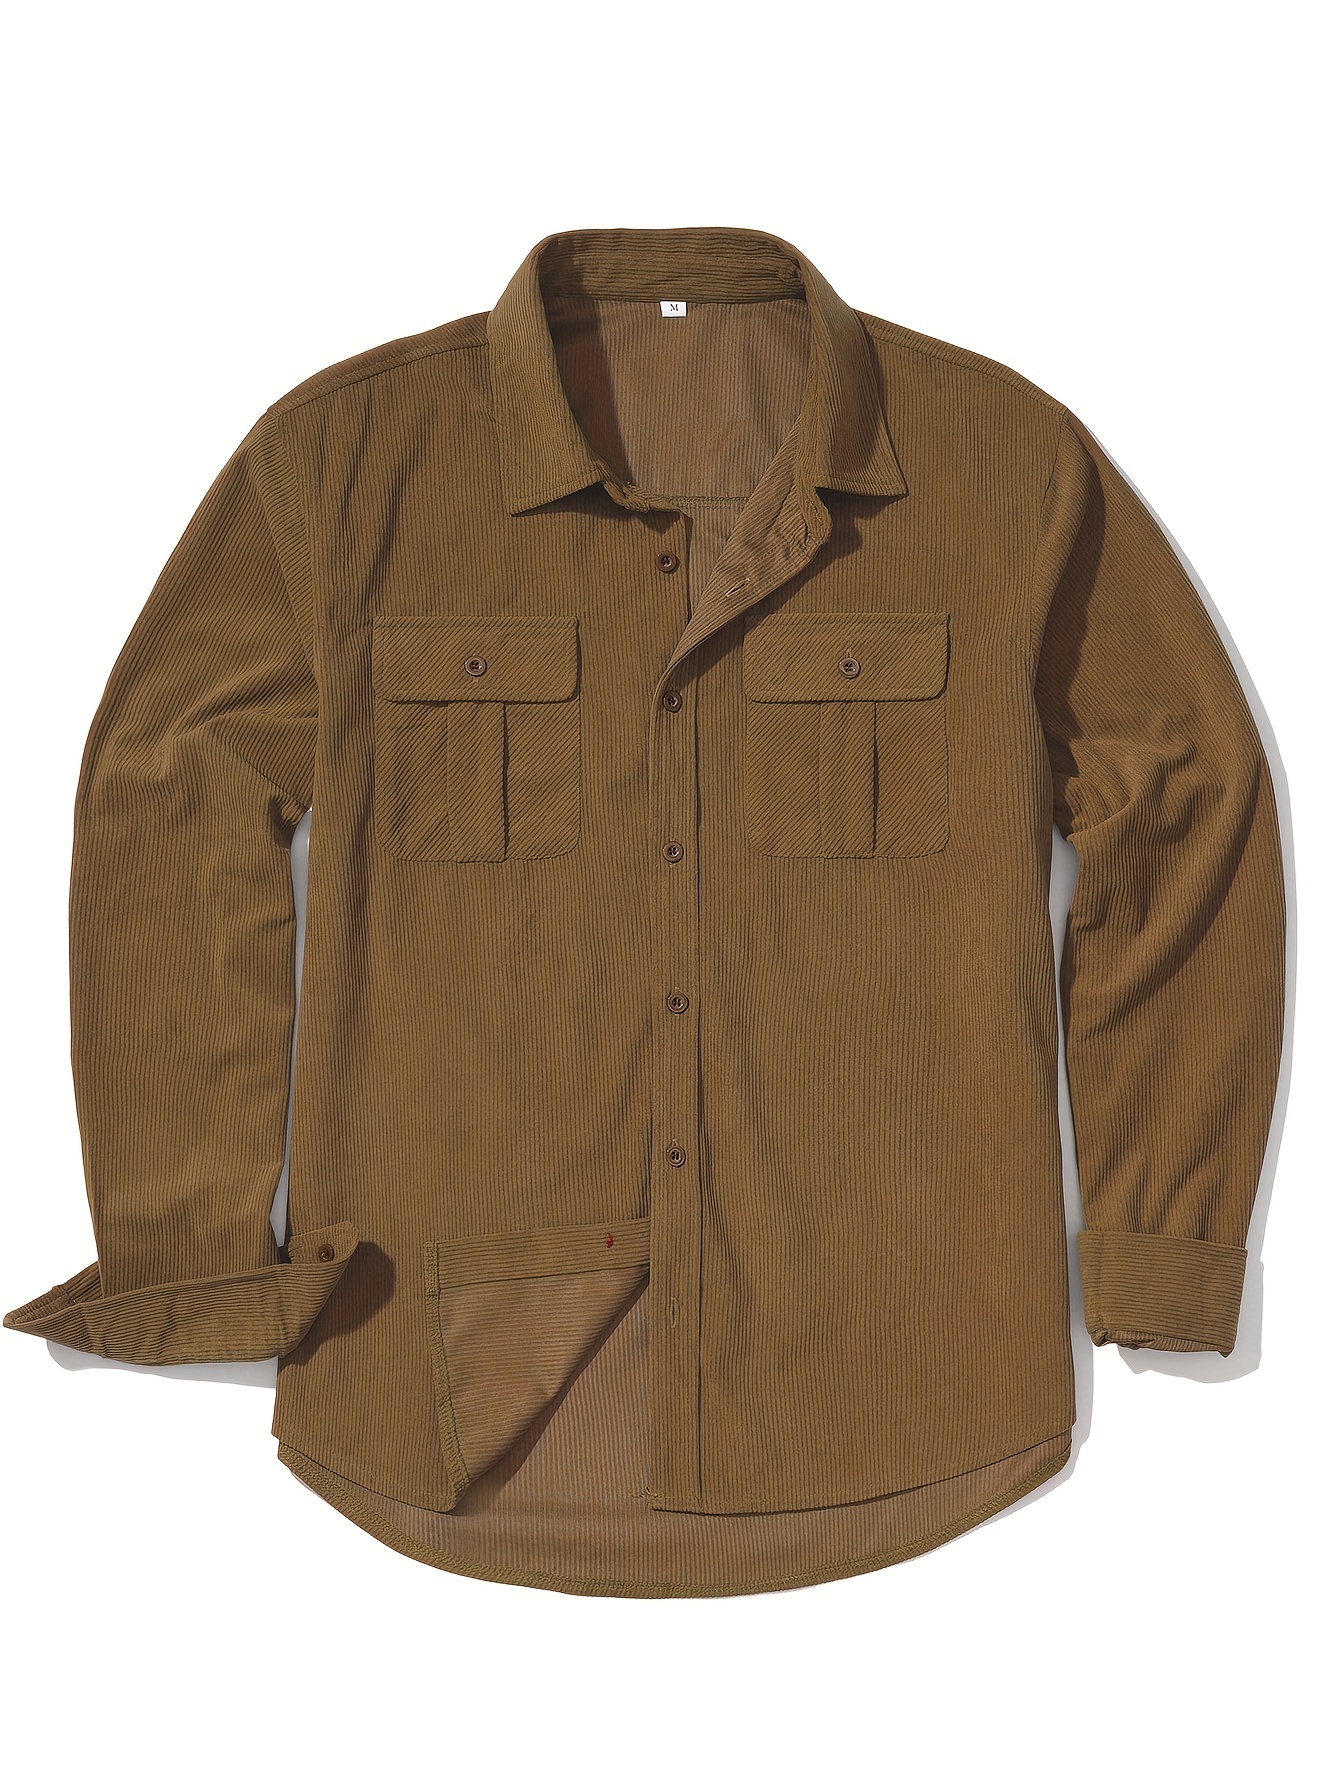 Quick Dry Cargo Shirt, Cargo Shirts Mens, Fishing Shirt, Streetwear